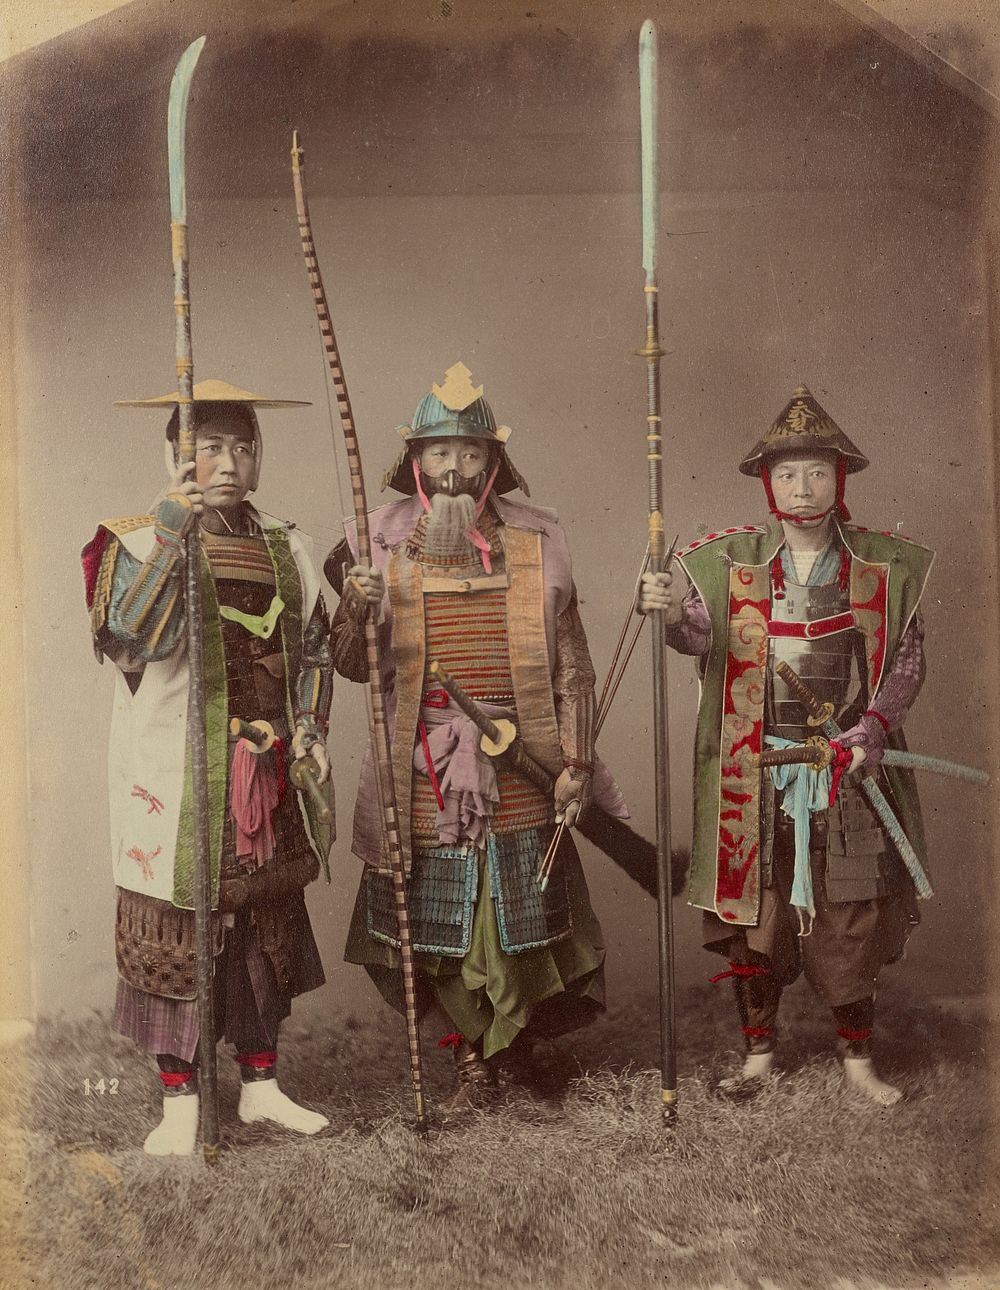 Samurai in Armour by Kusakabe Kimbei